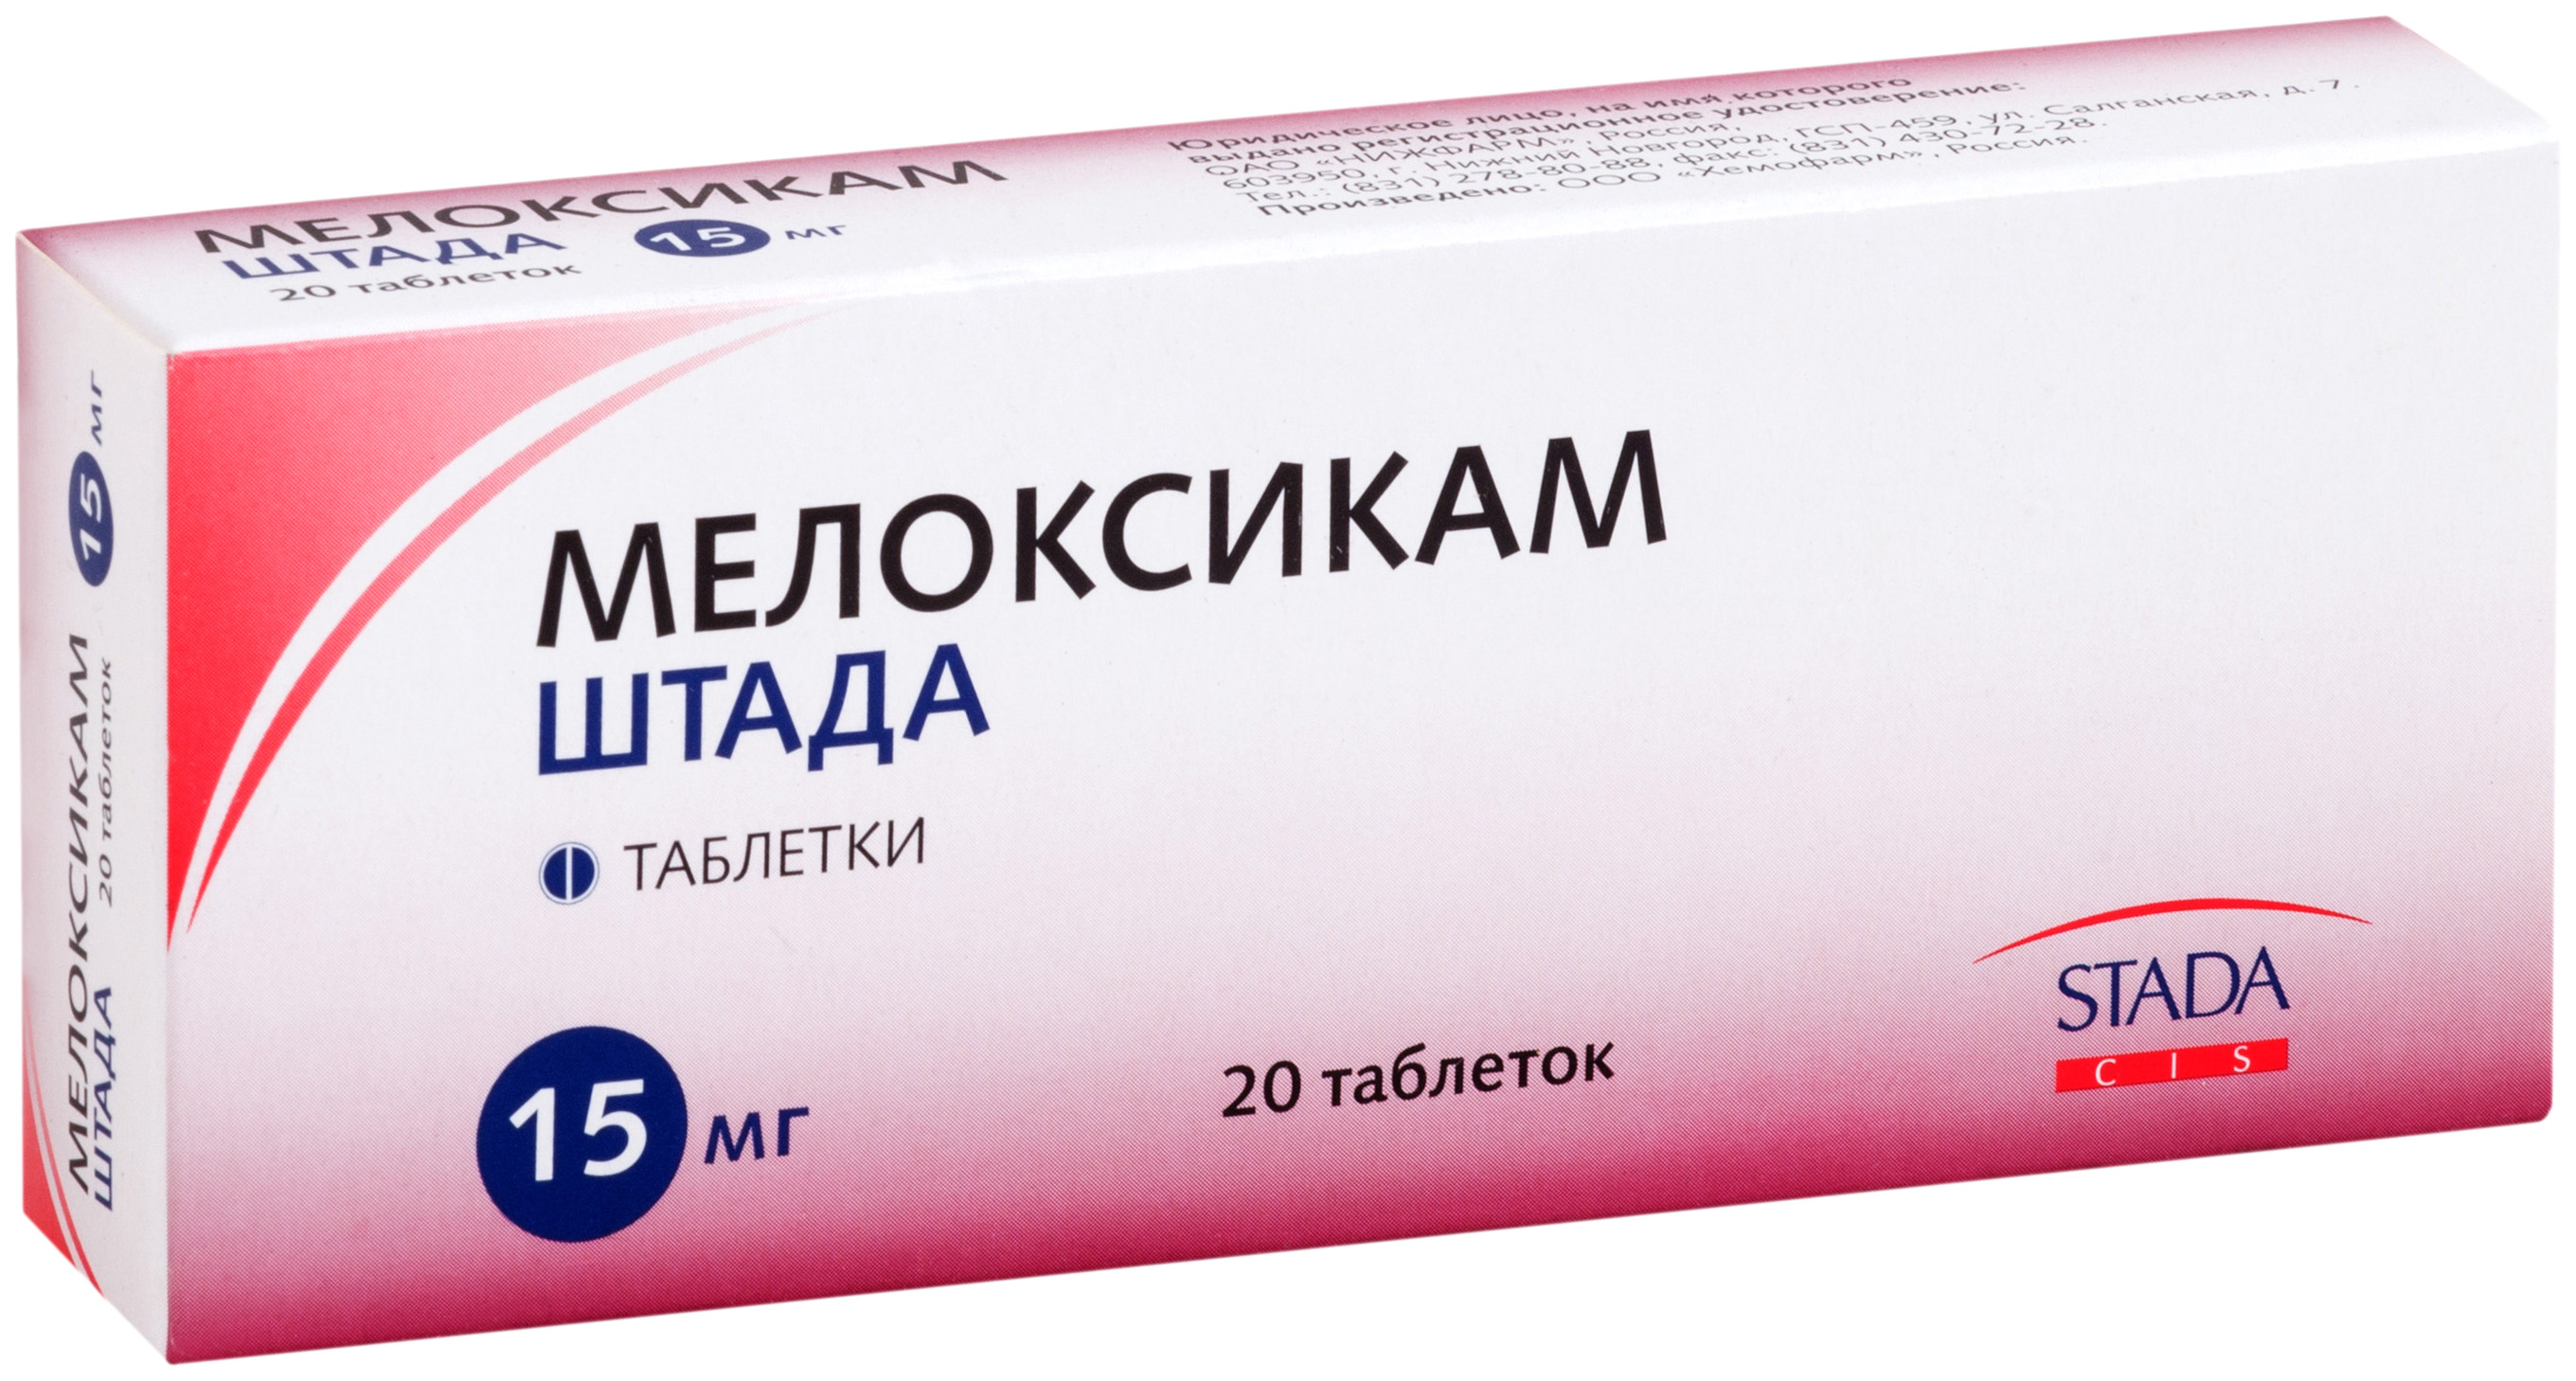 Мелоксикам-Штада 15 мг таблетки 20 шт.